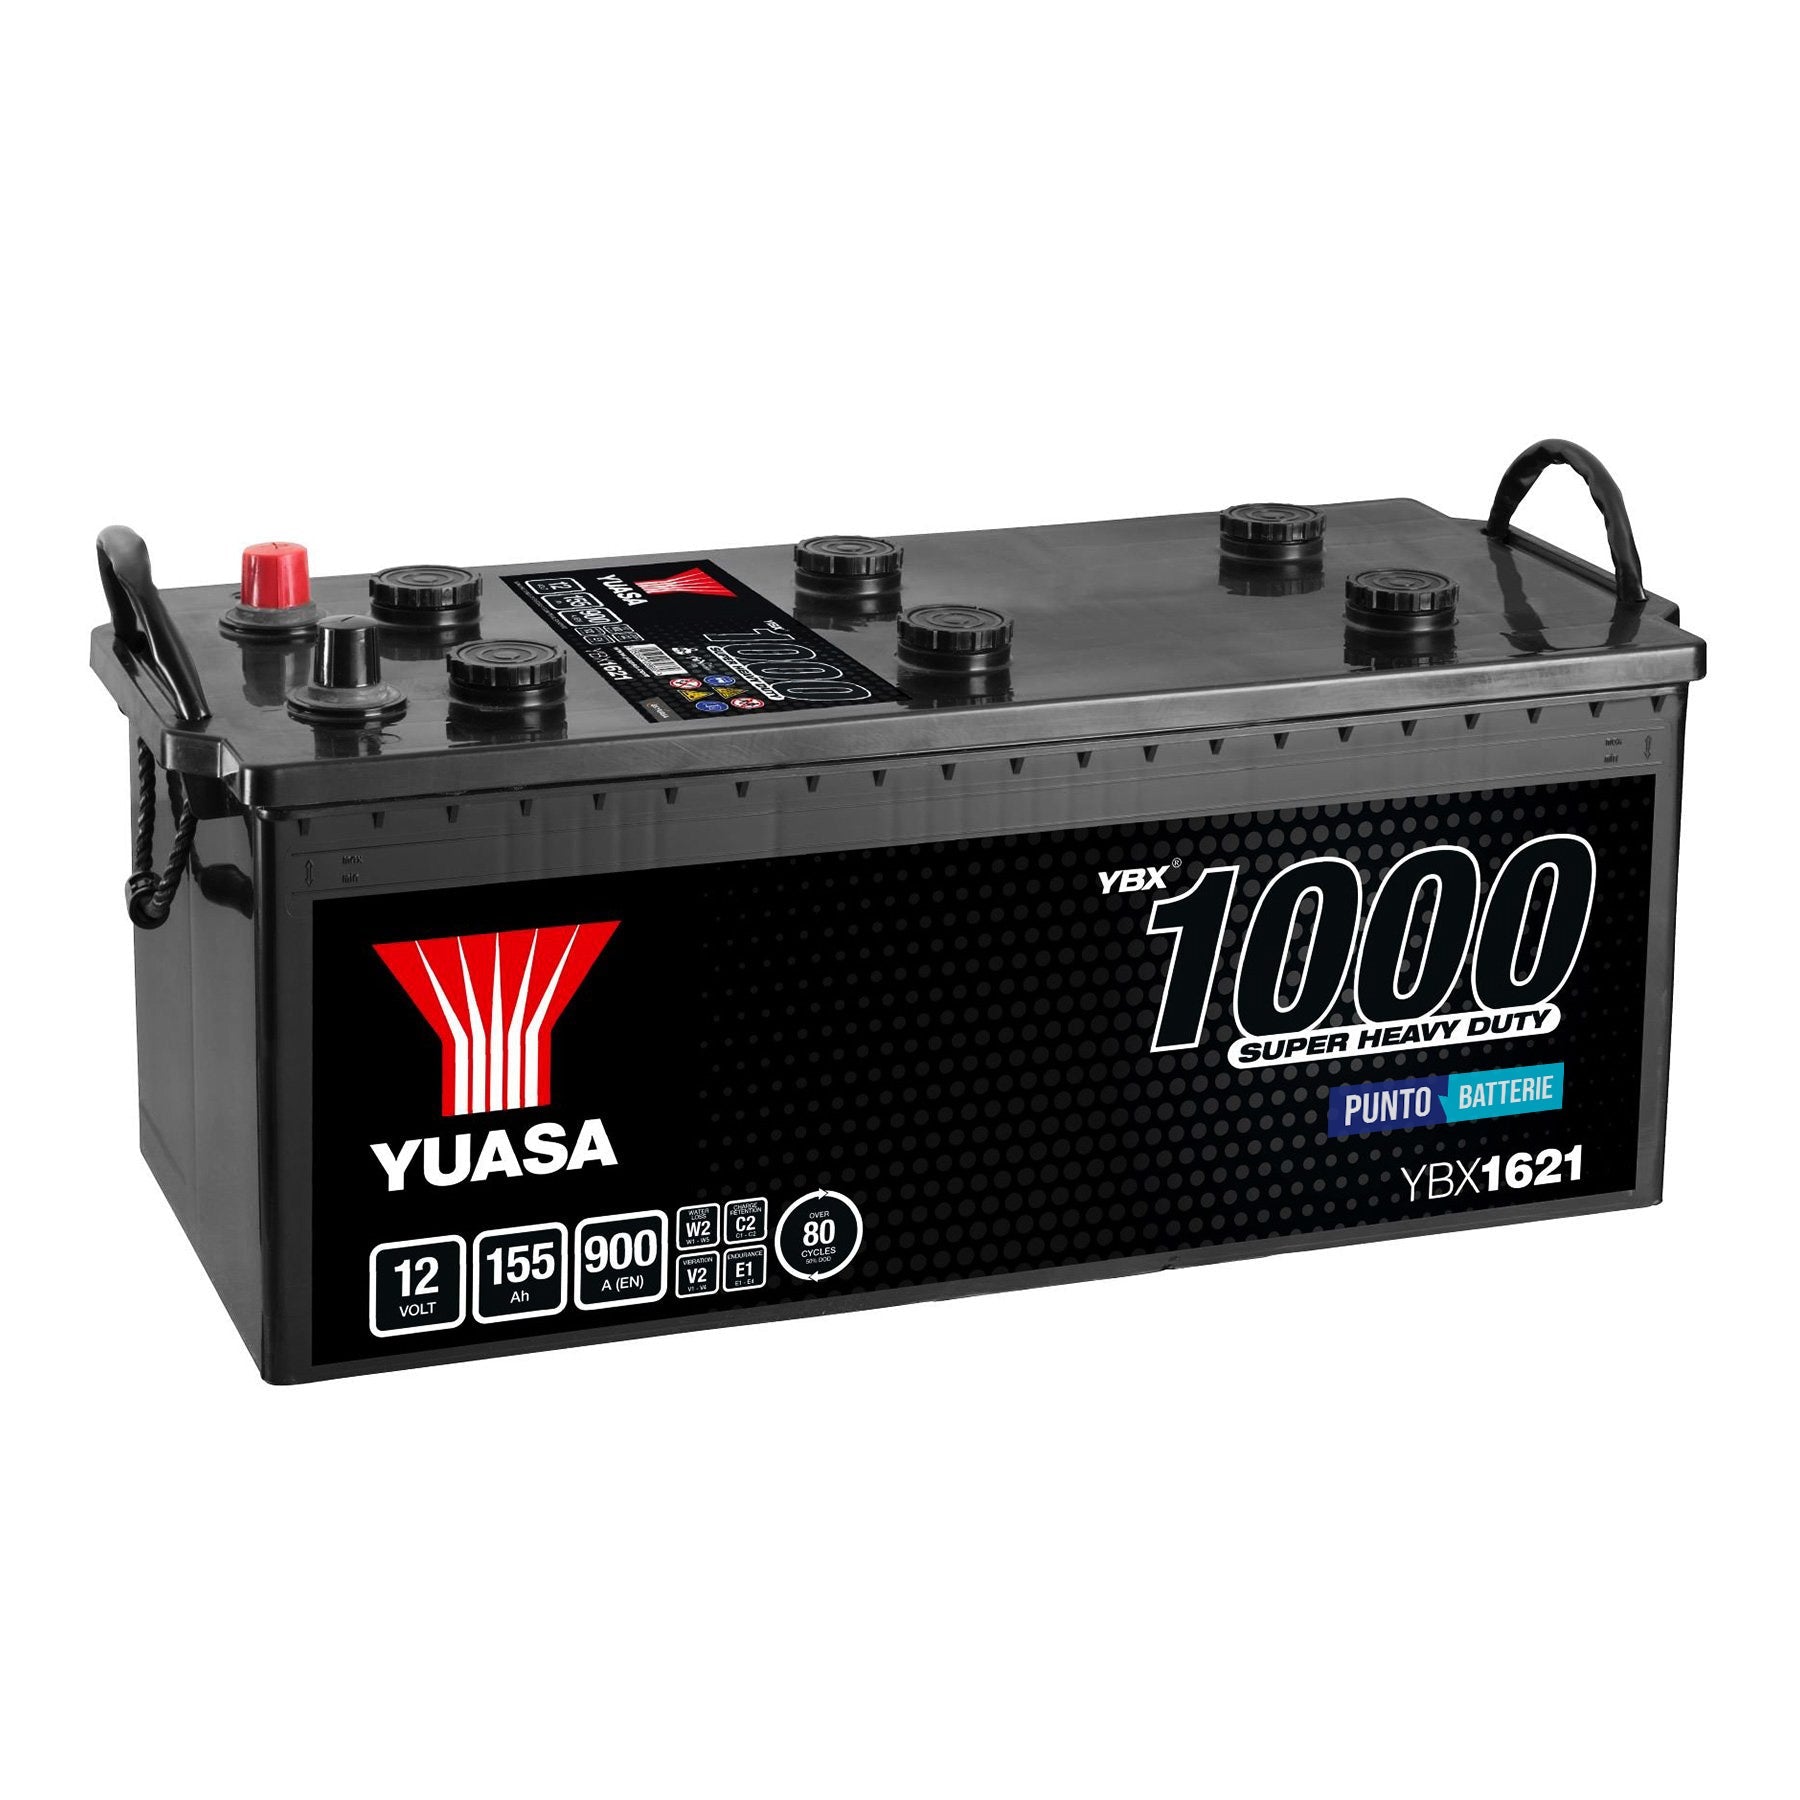 Batteria originale Yuasa YBX1000 YBX1621, dimensioni 513 x 223 x 223, polo positivo a sinistra, 12 volt, 155 amperora, 900 ampere. Batteria per camion e veicoli pesanti.